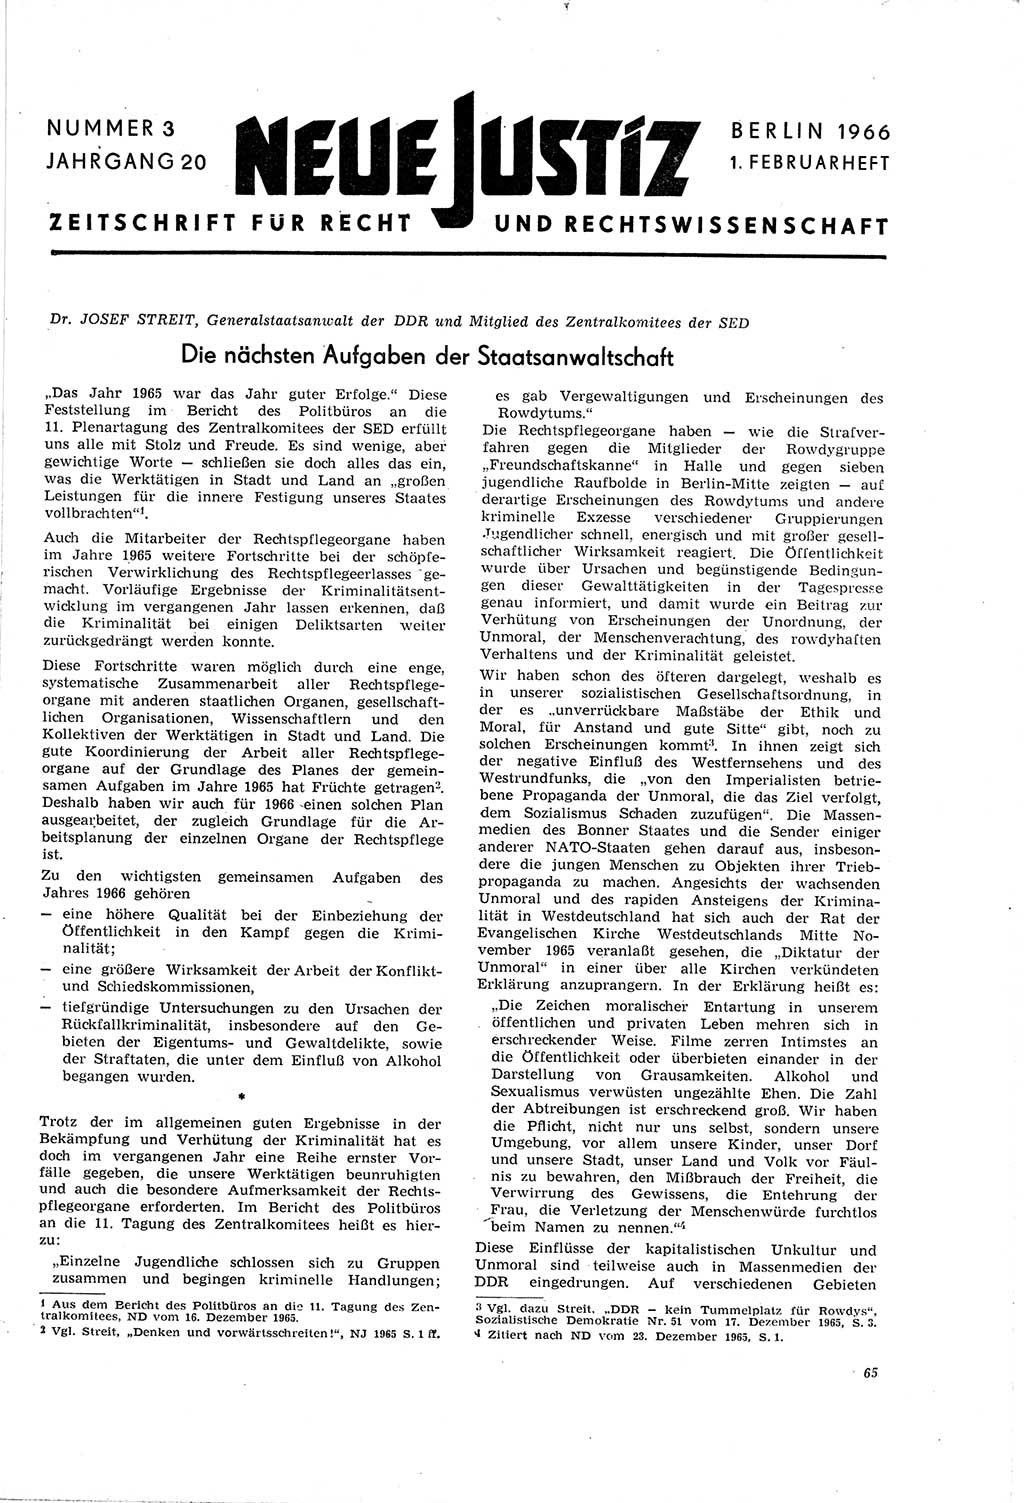 Neue Justiz (NJ), Zeitschrift für Recht und Rechtswissenschaft [Deutsche Demokratische Republik (DDR)], 20. Jahrgang 1966, Seite 65 (NJ DDR 1966, S. 65)